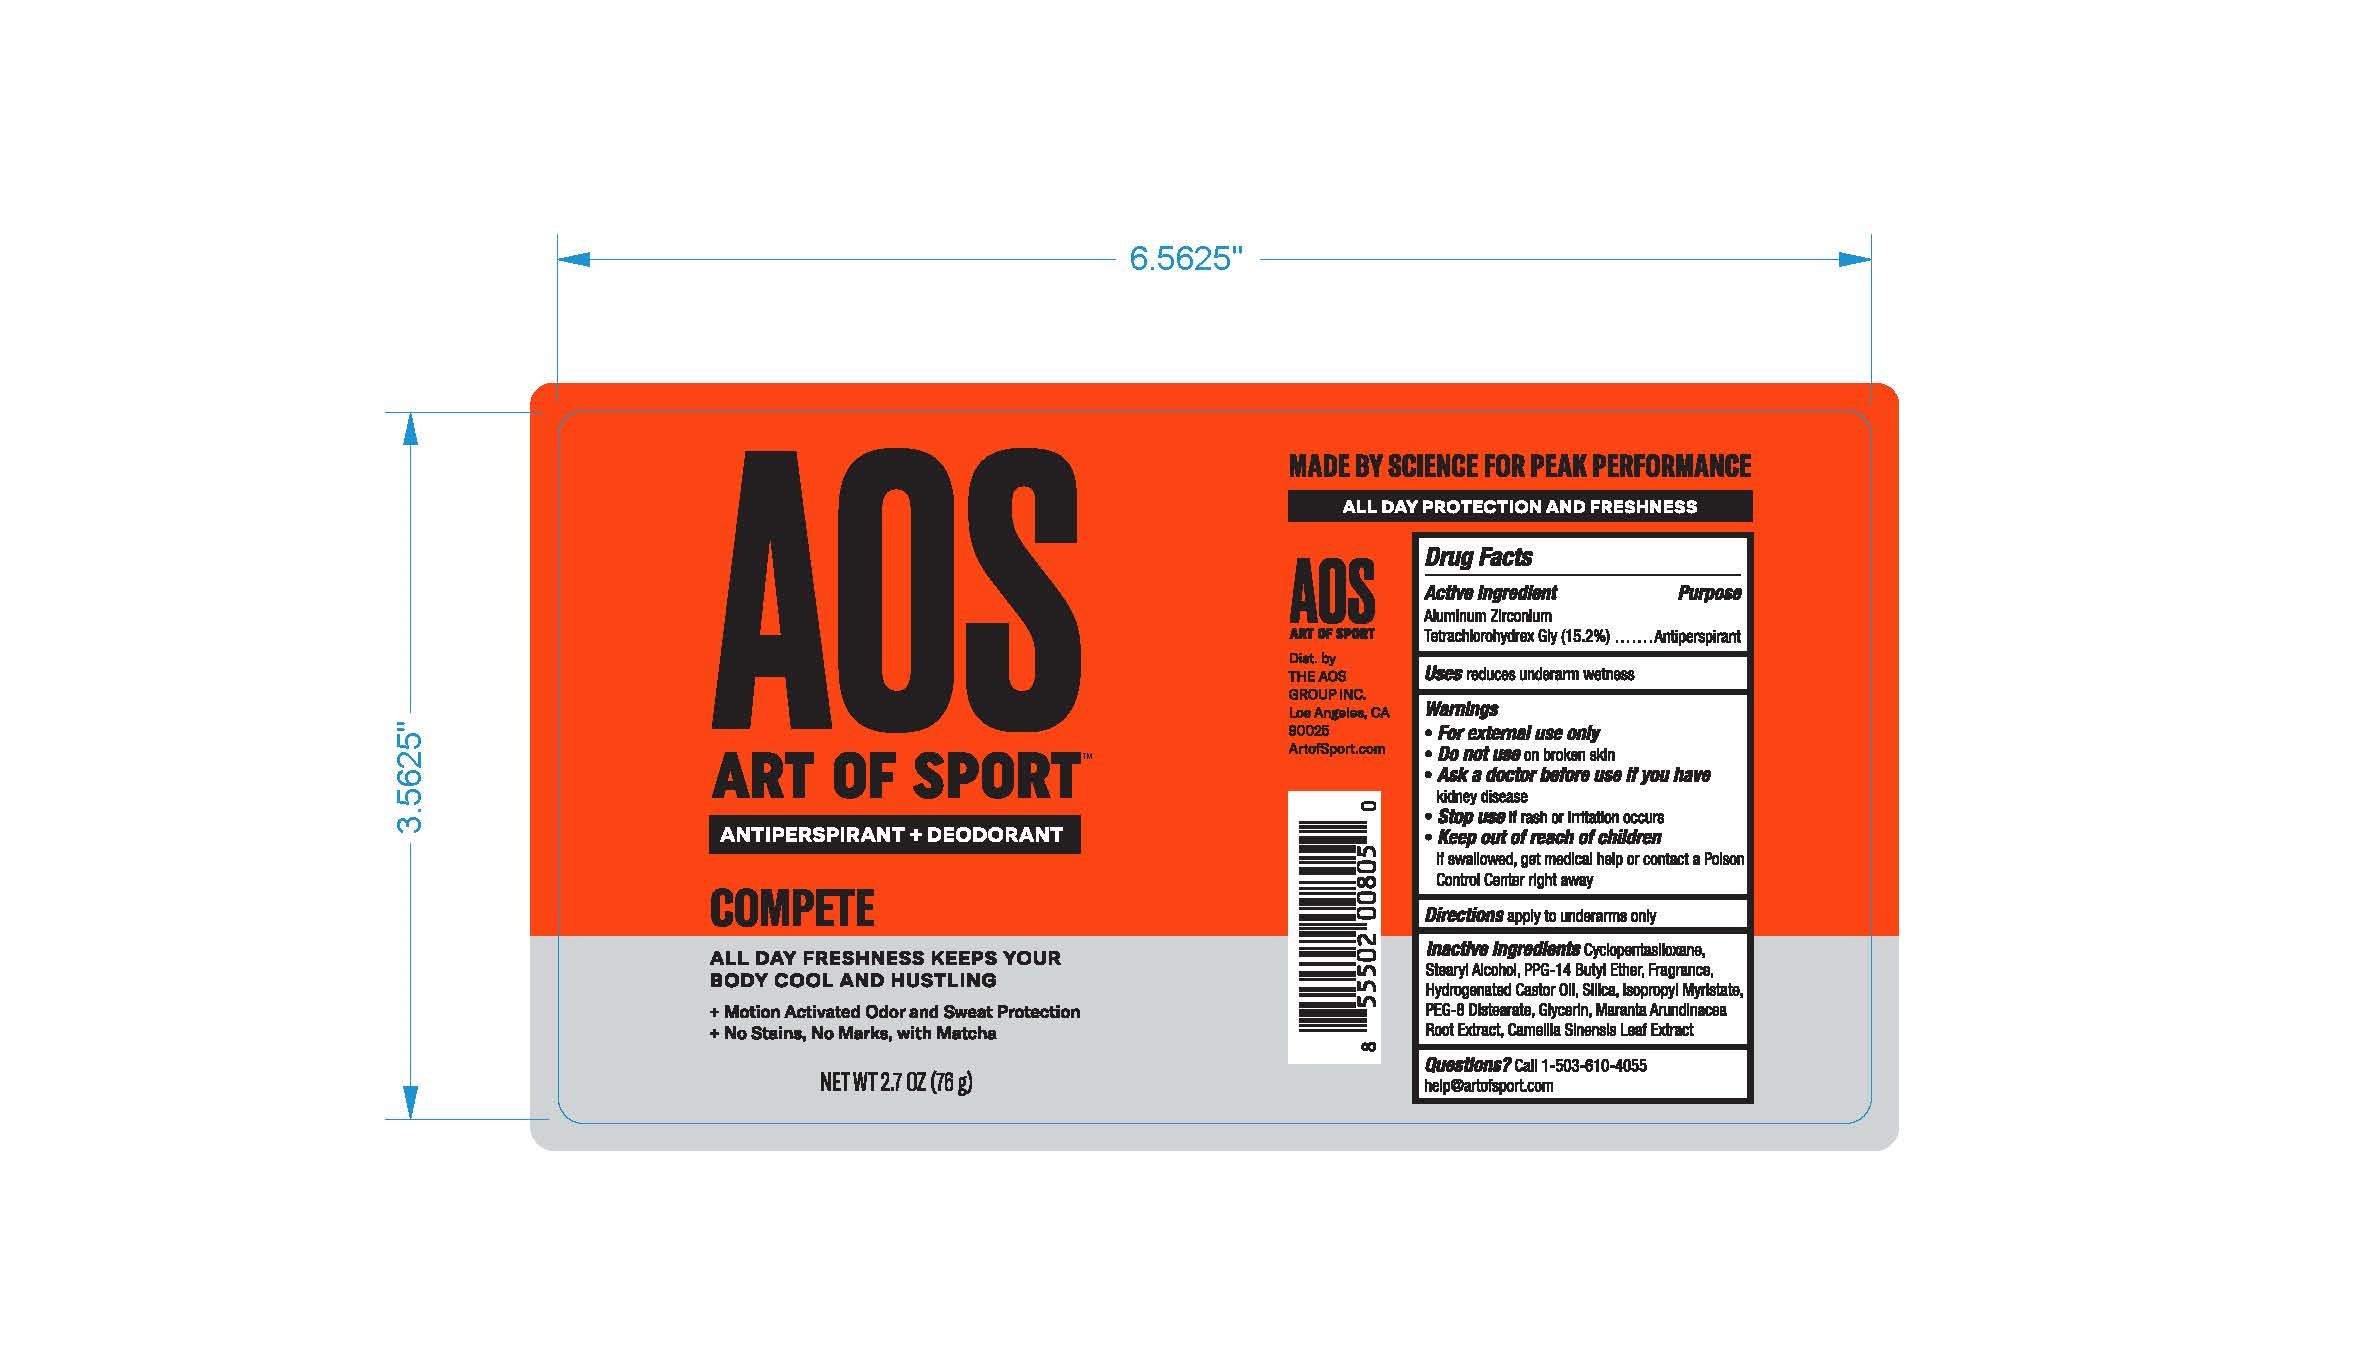 Label for Antiperspirant deodorant Compete